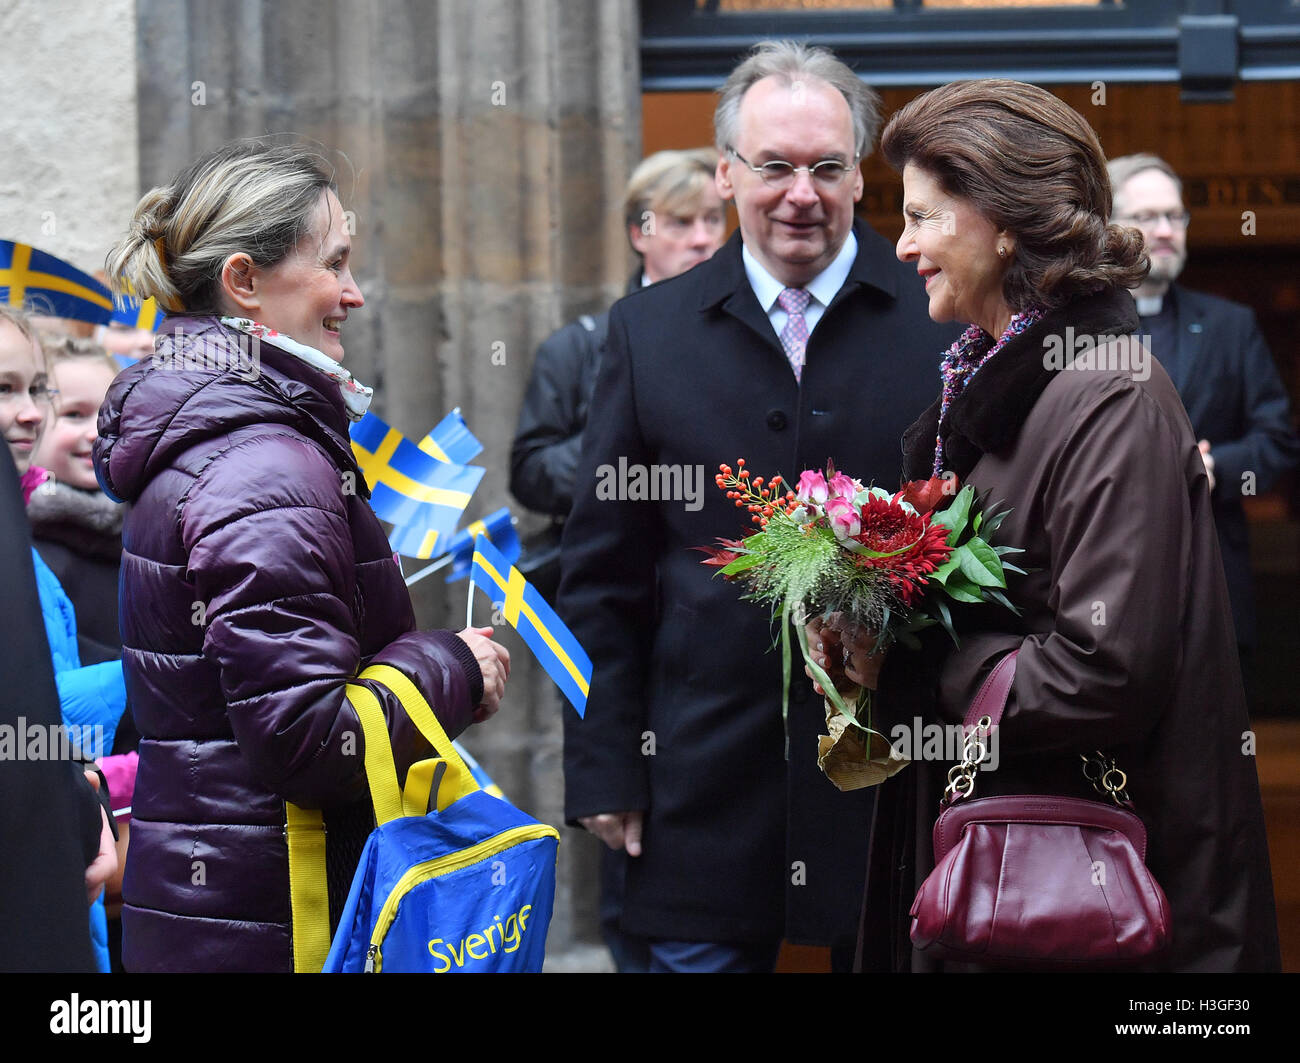 Wittenberg, Allemagne. 8 octobre 2016. La Reine Silvia de Suède (r) et Reiner Haseloff (CDU), premier ministre de Saxe Anhalt, parlant avec l'enseignant Stefanie Kirbach (l) à l'extérieur de la ville, église de Wittenberg, Allemagne, le 8 octobre 2016. Le couple royal suédois est sur un 4 jours en Allemagne. PHOTO : HENDRIK SCHMIDT/DPA/Alamy Live News Banque D'Images